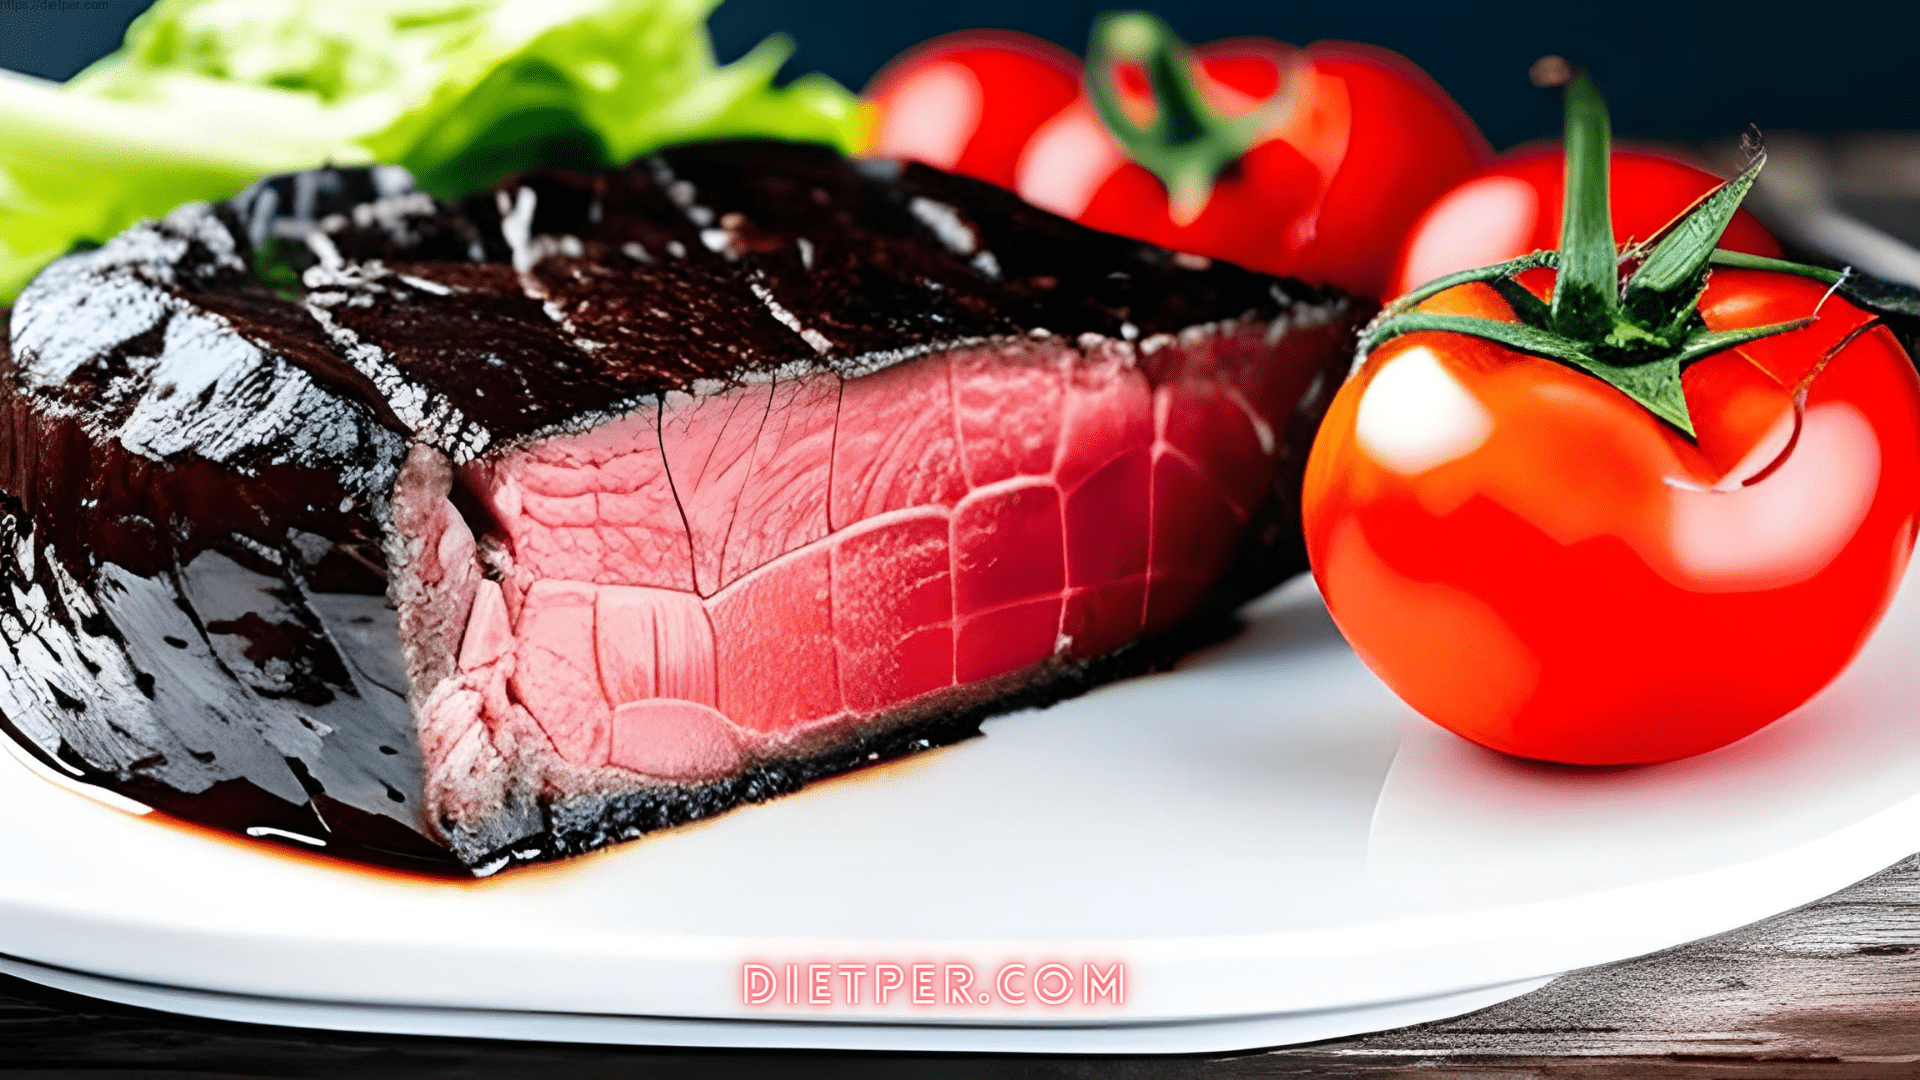 Carnivore Diet Benefits